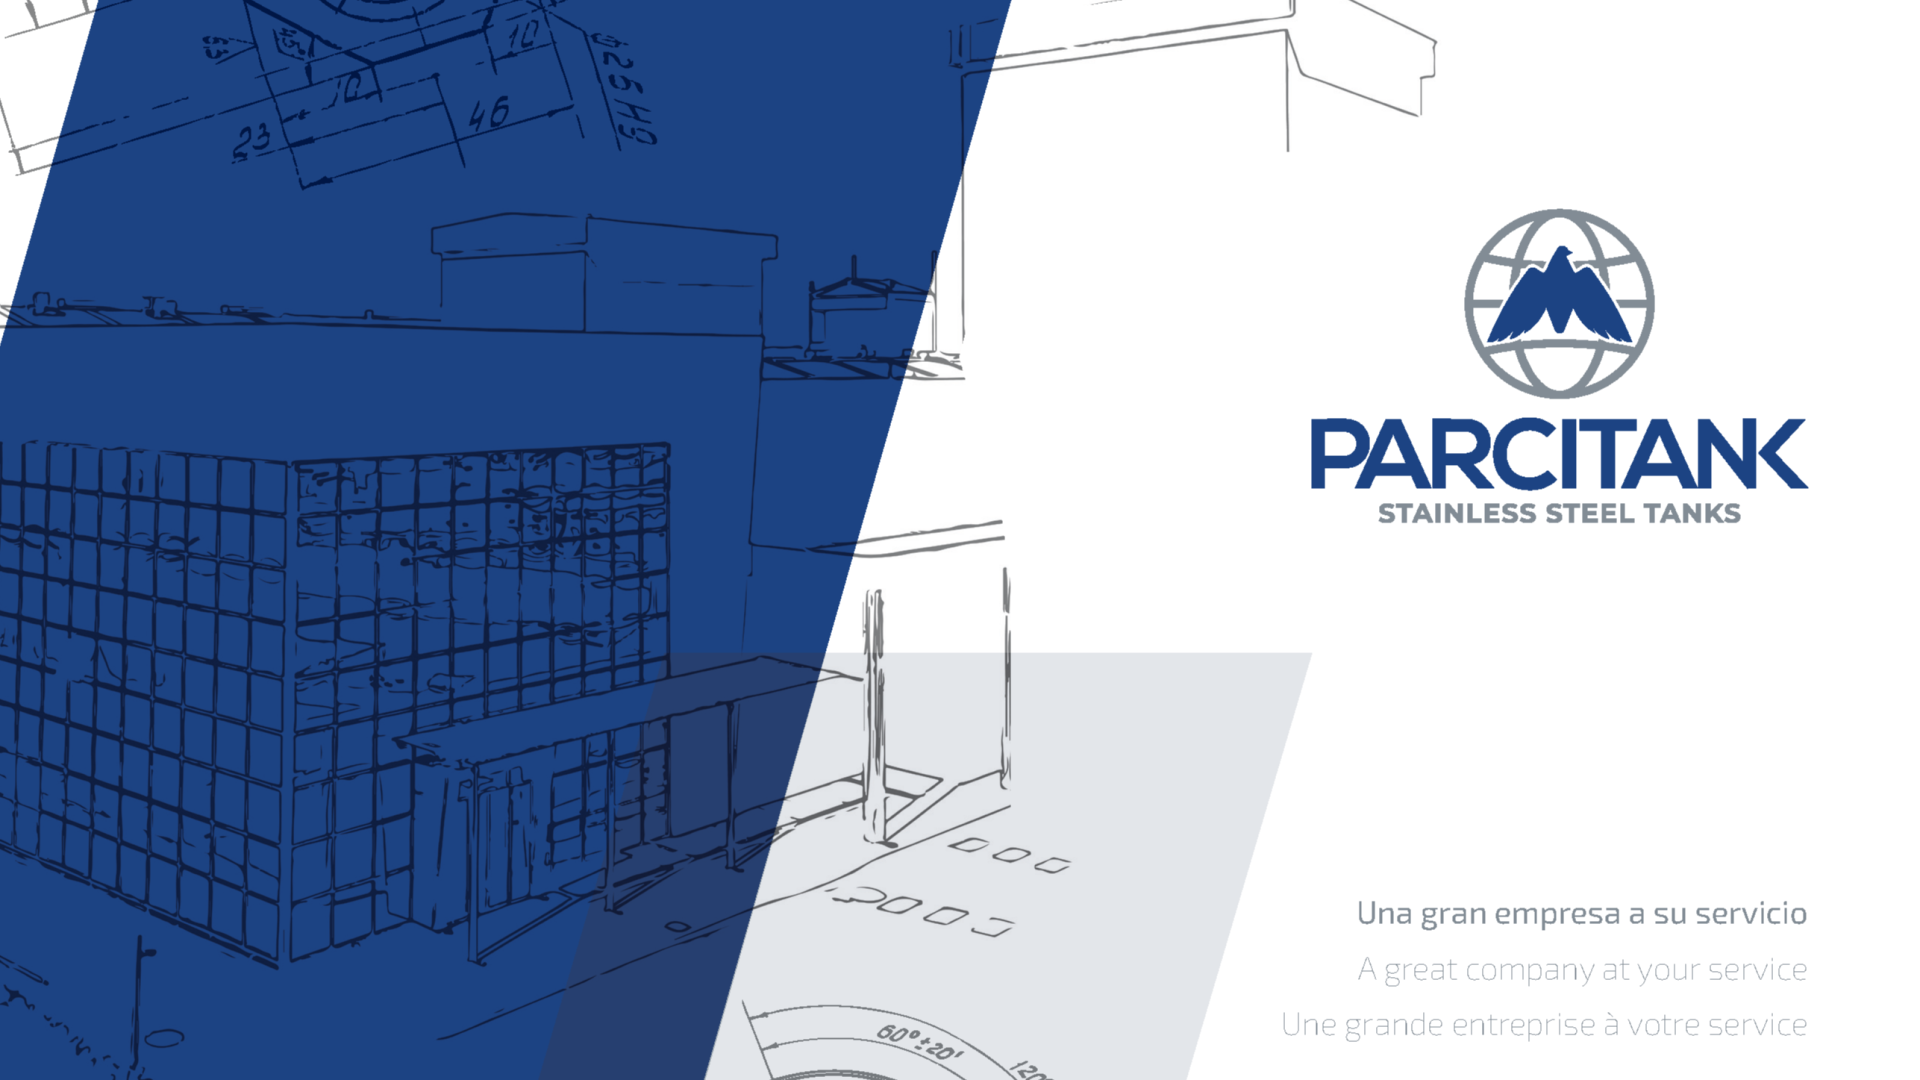 ¡Visita el catalogo interactivo de PARCITANK, S.A.!